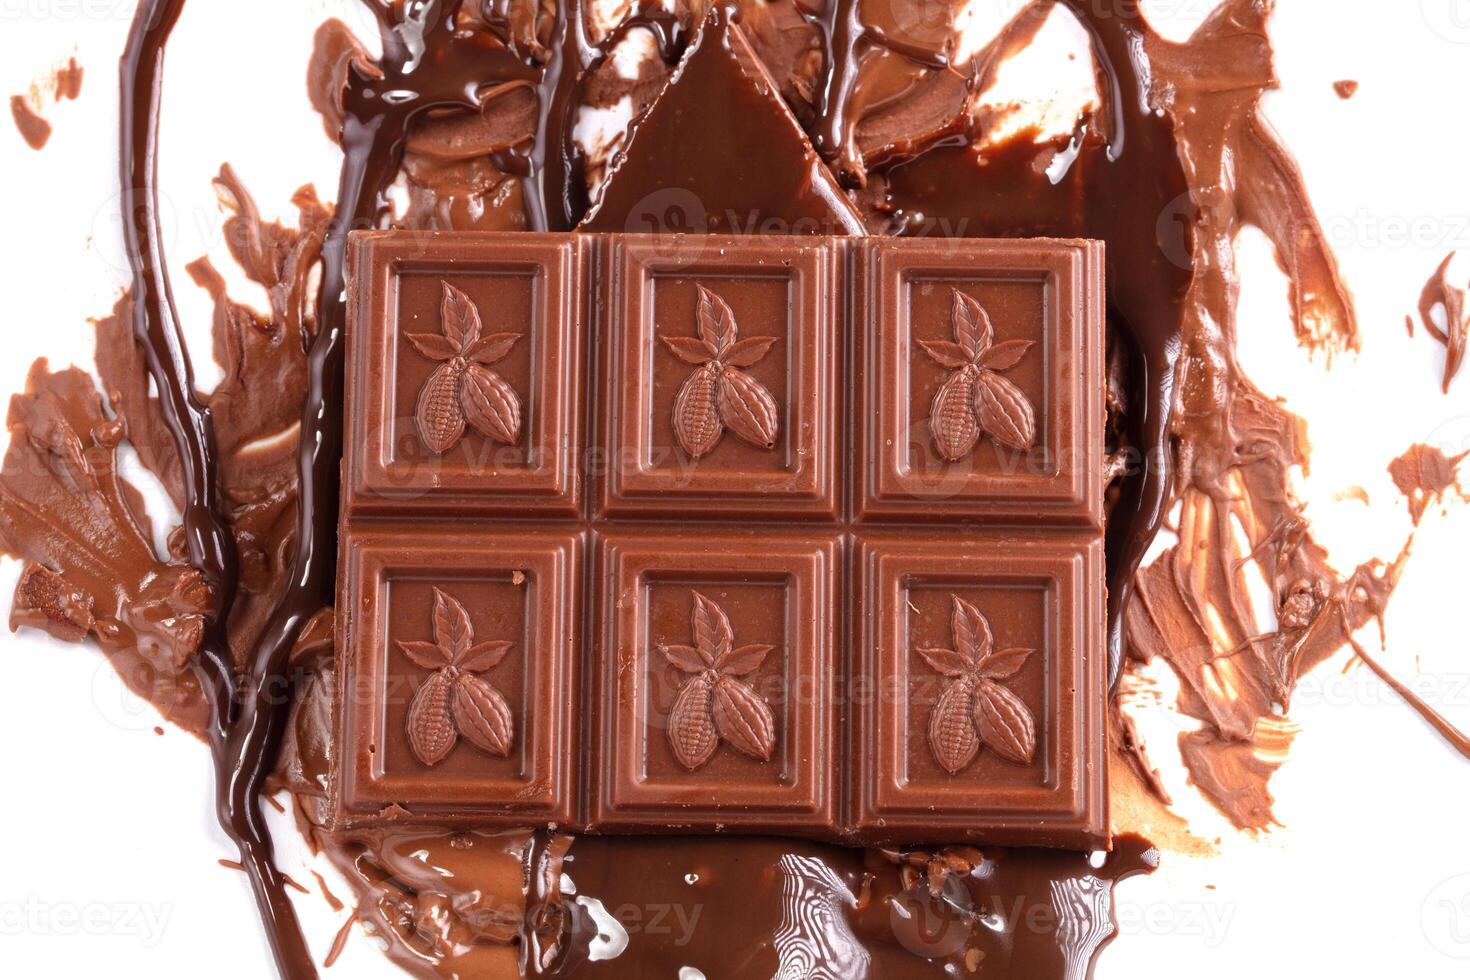 dulce Derretido chocolate antecedentes con chocolate cuadrícula en cuales cacao frijoles son dibujado. masa de chocolate. foto